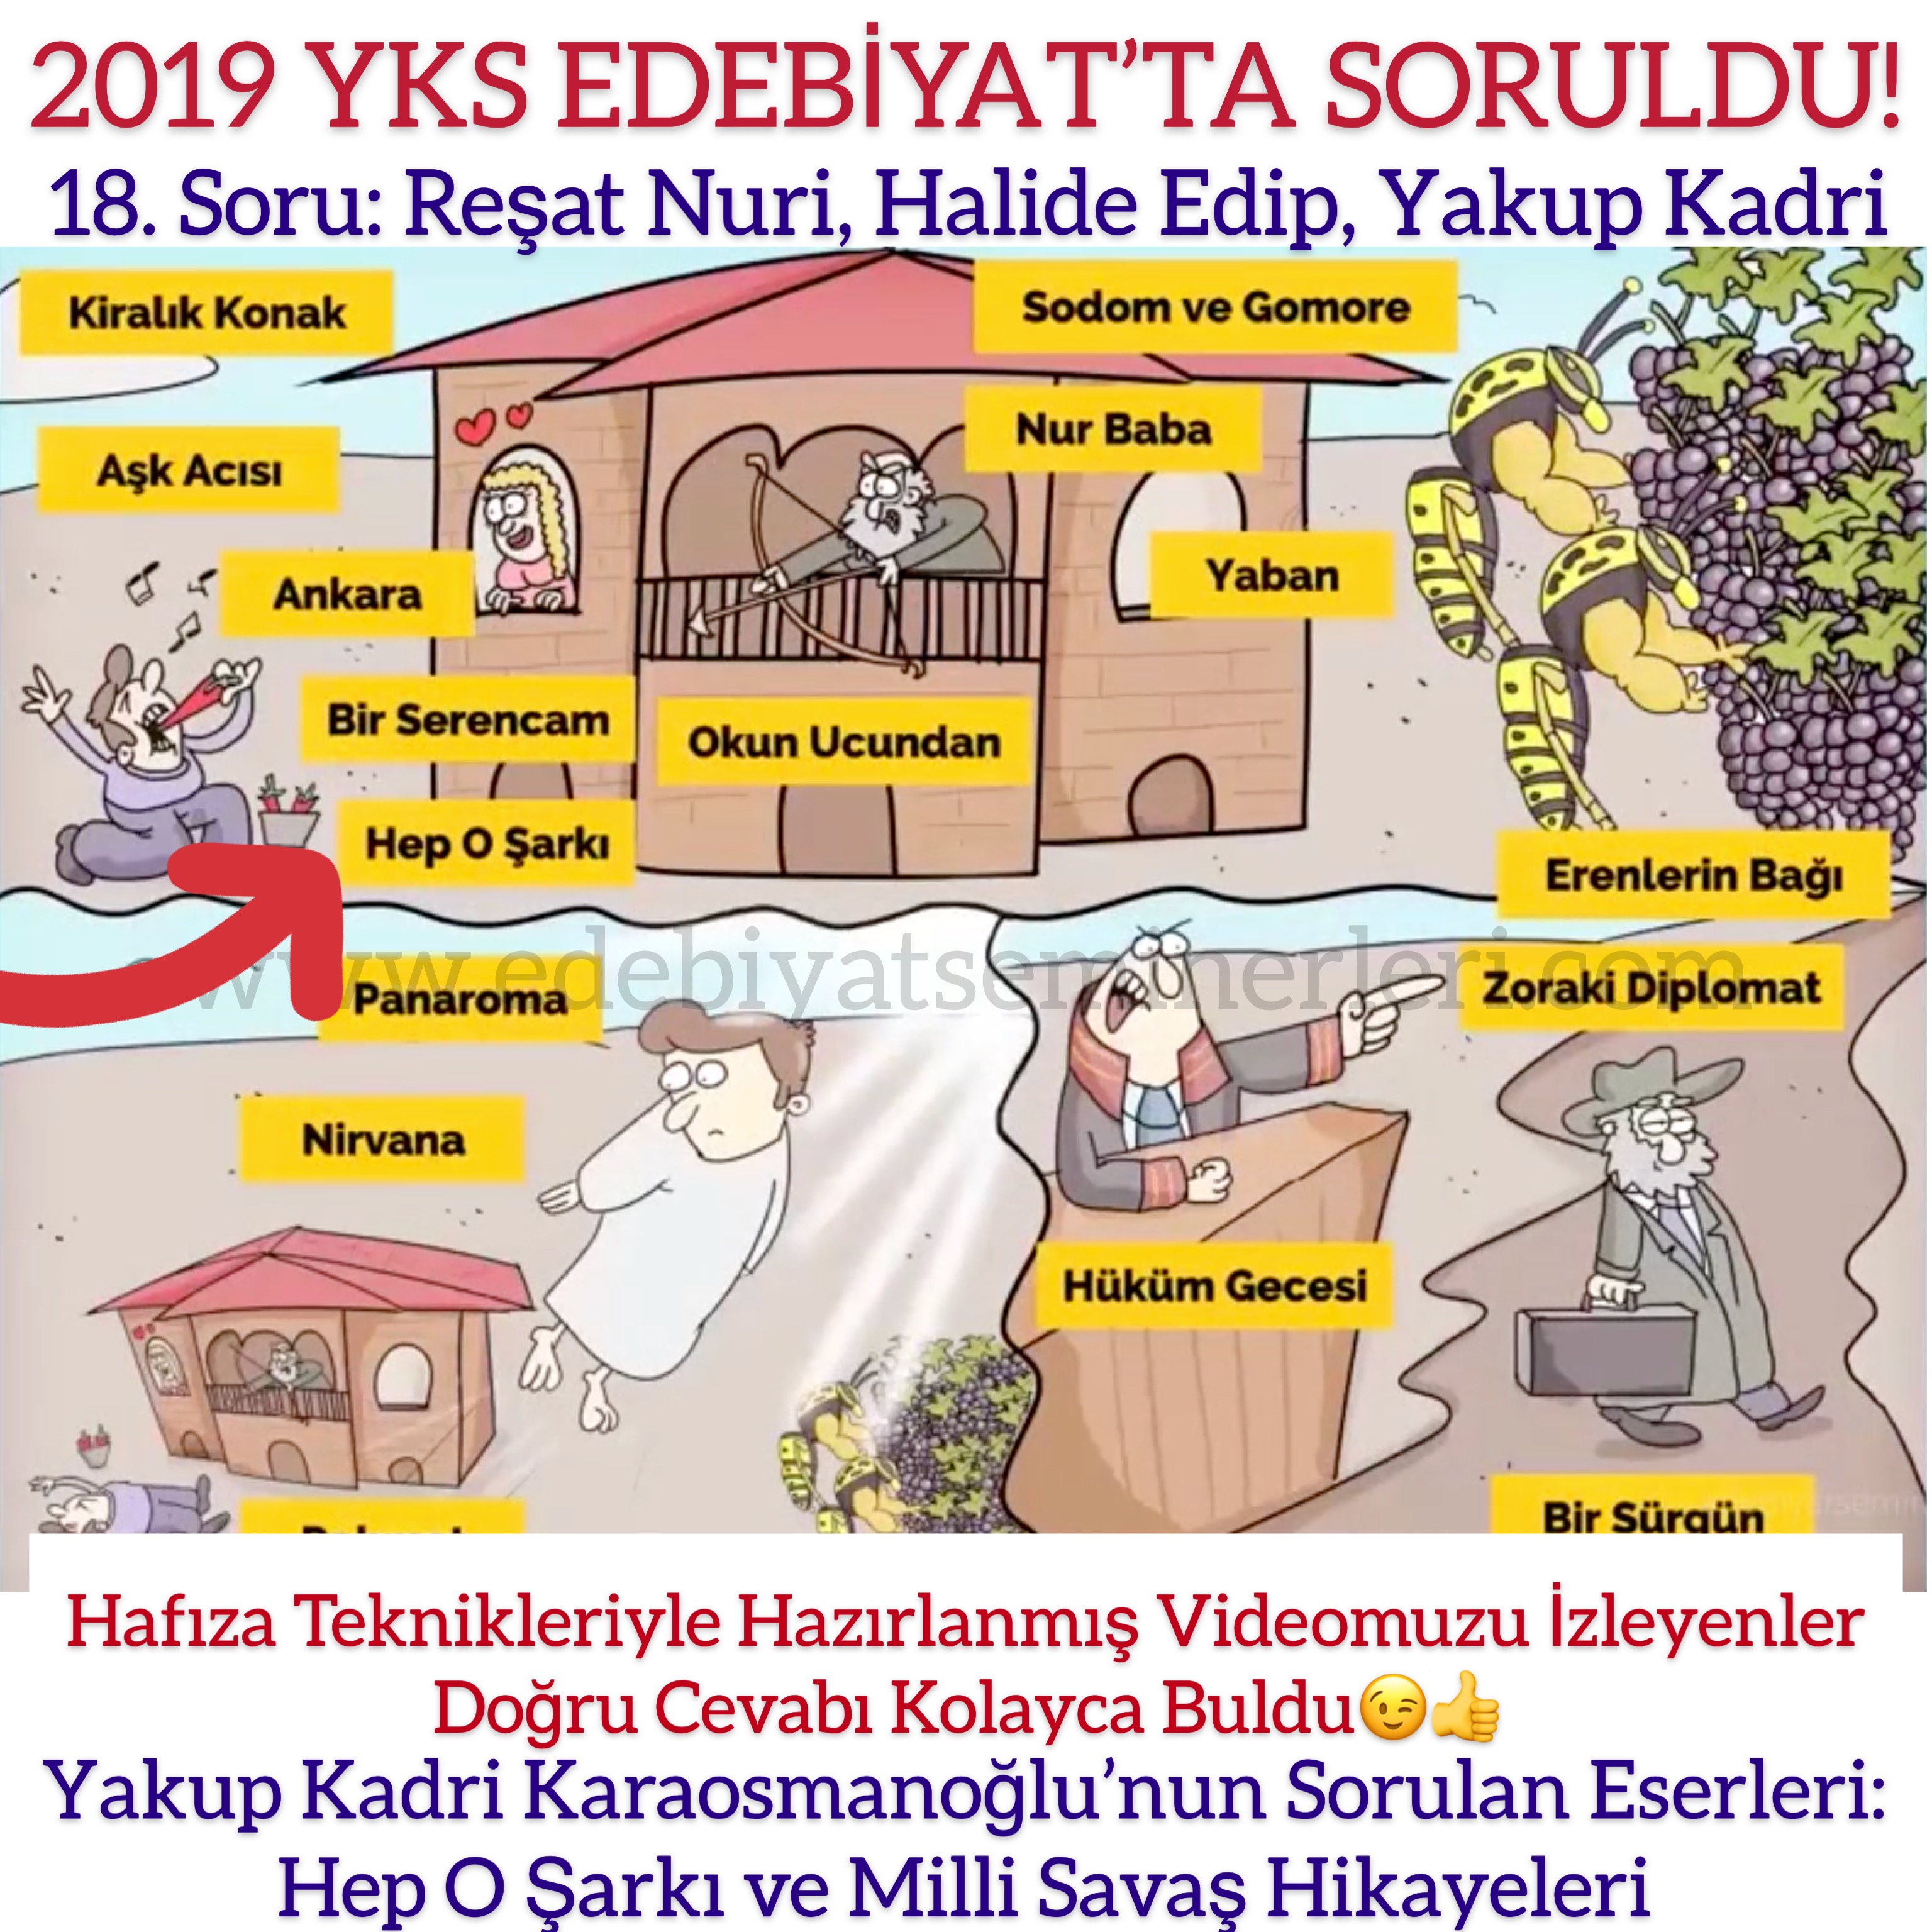 2019 YKS Edebiyat'ta Soruldu